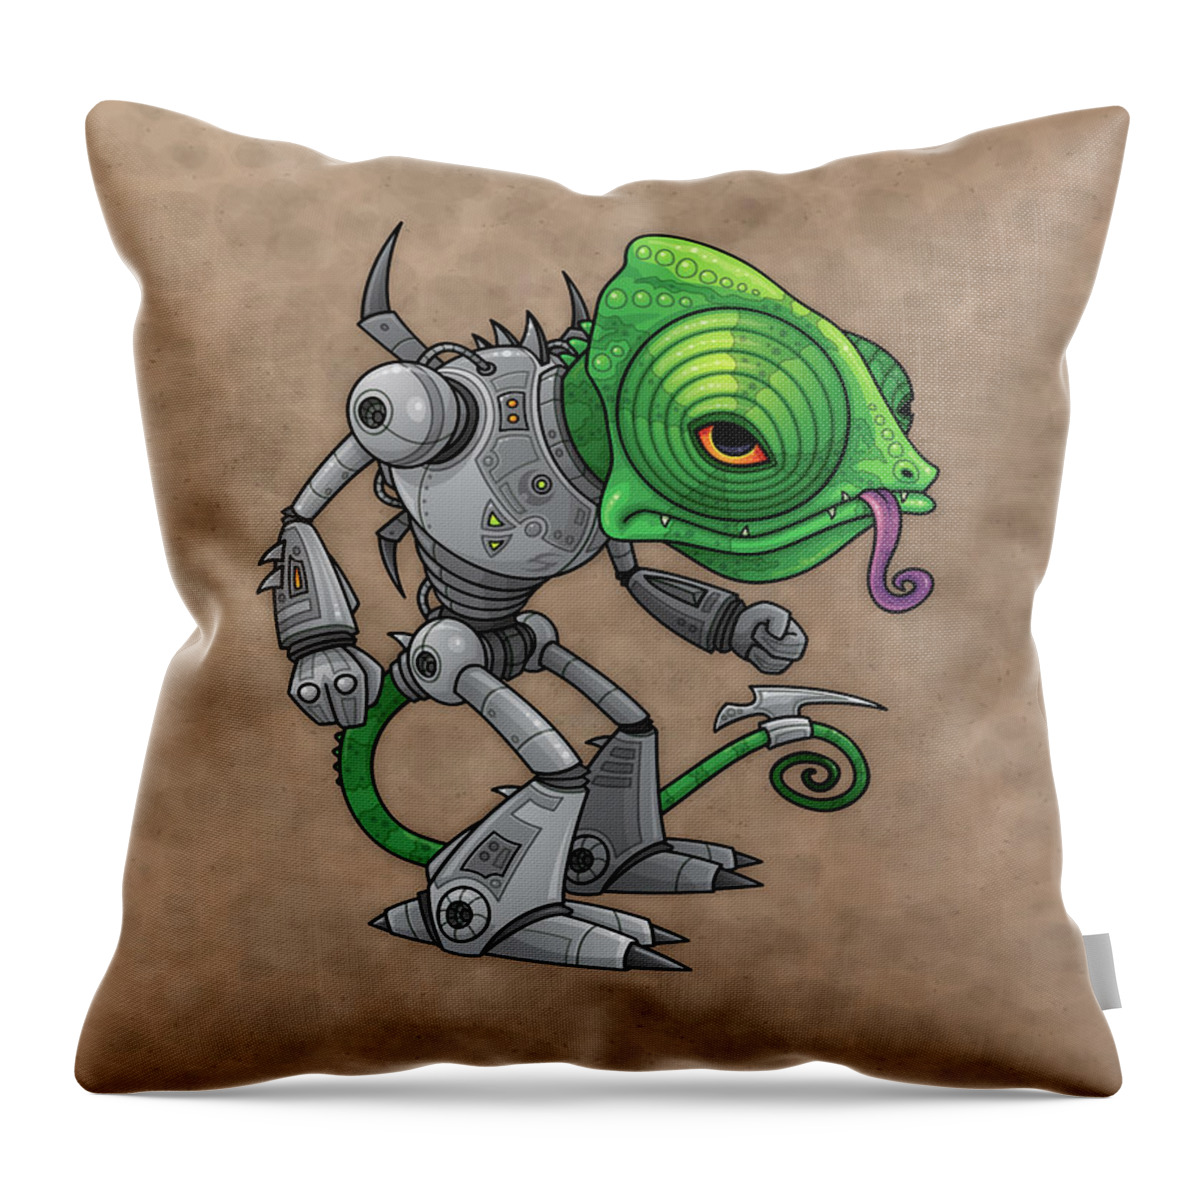 Lizard Throw Pillow featuring the digital art Chameleozoid by John Schwegel